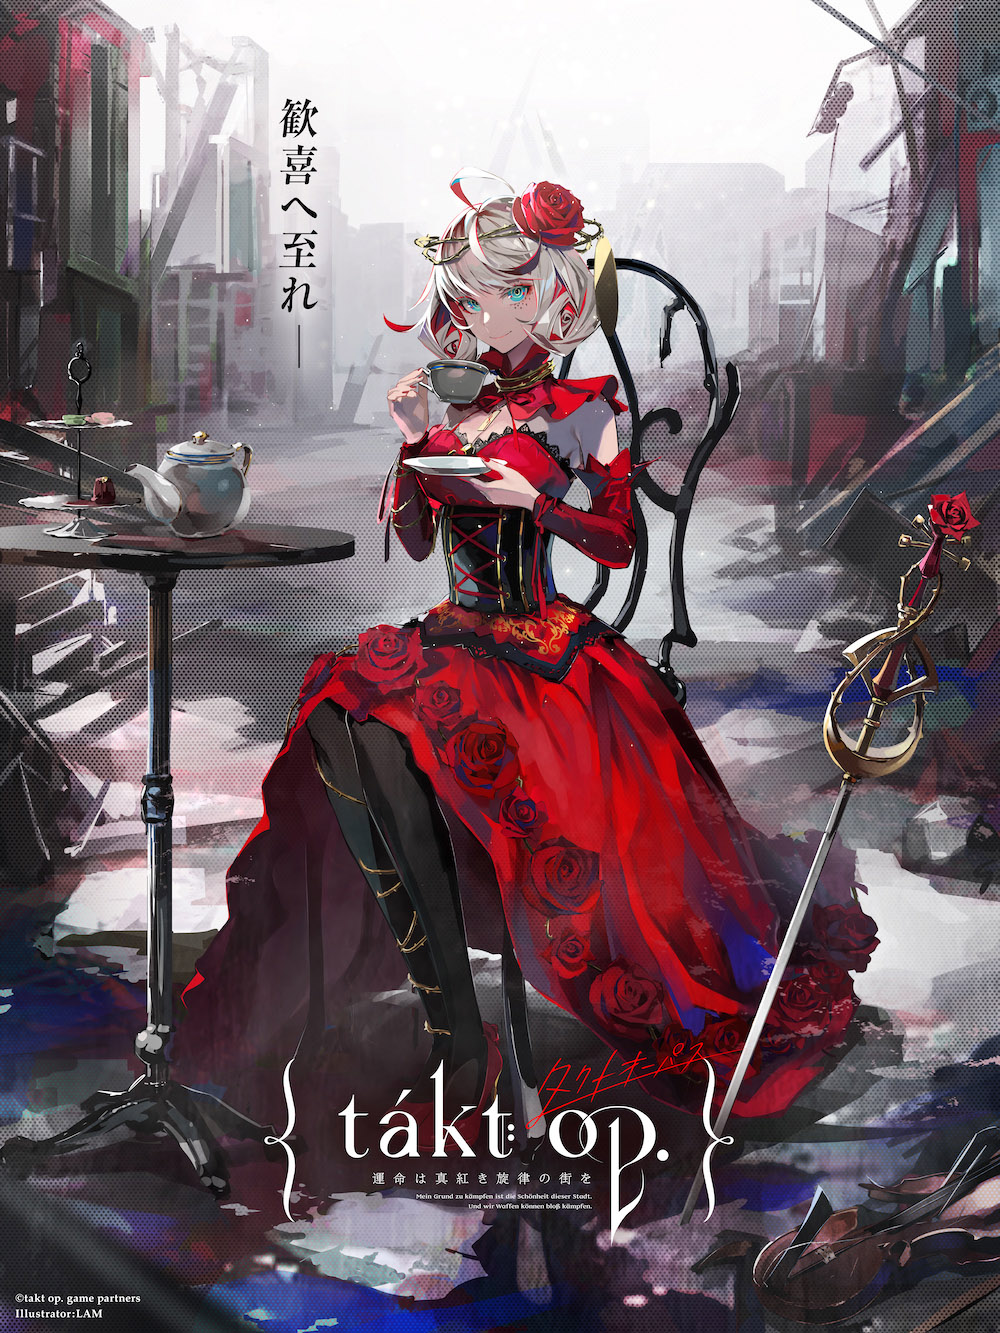 新作アプリ「takt op. 運命は真紅き旋律の街を」が2021年内にリリース。主題歌には歌手の中島美嘉さんを起用